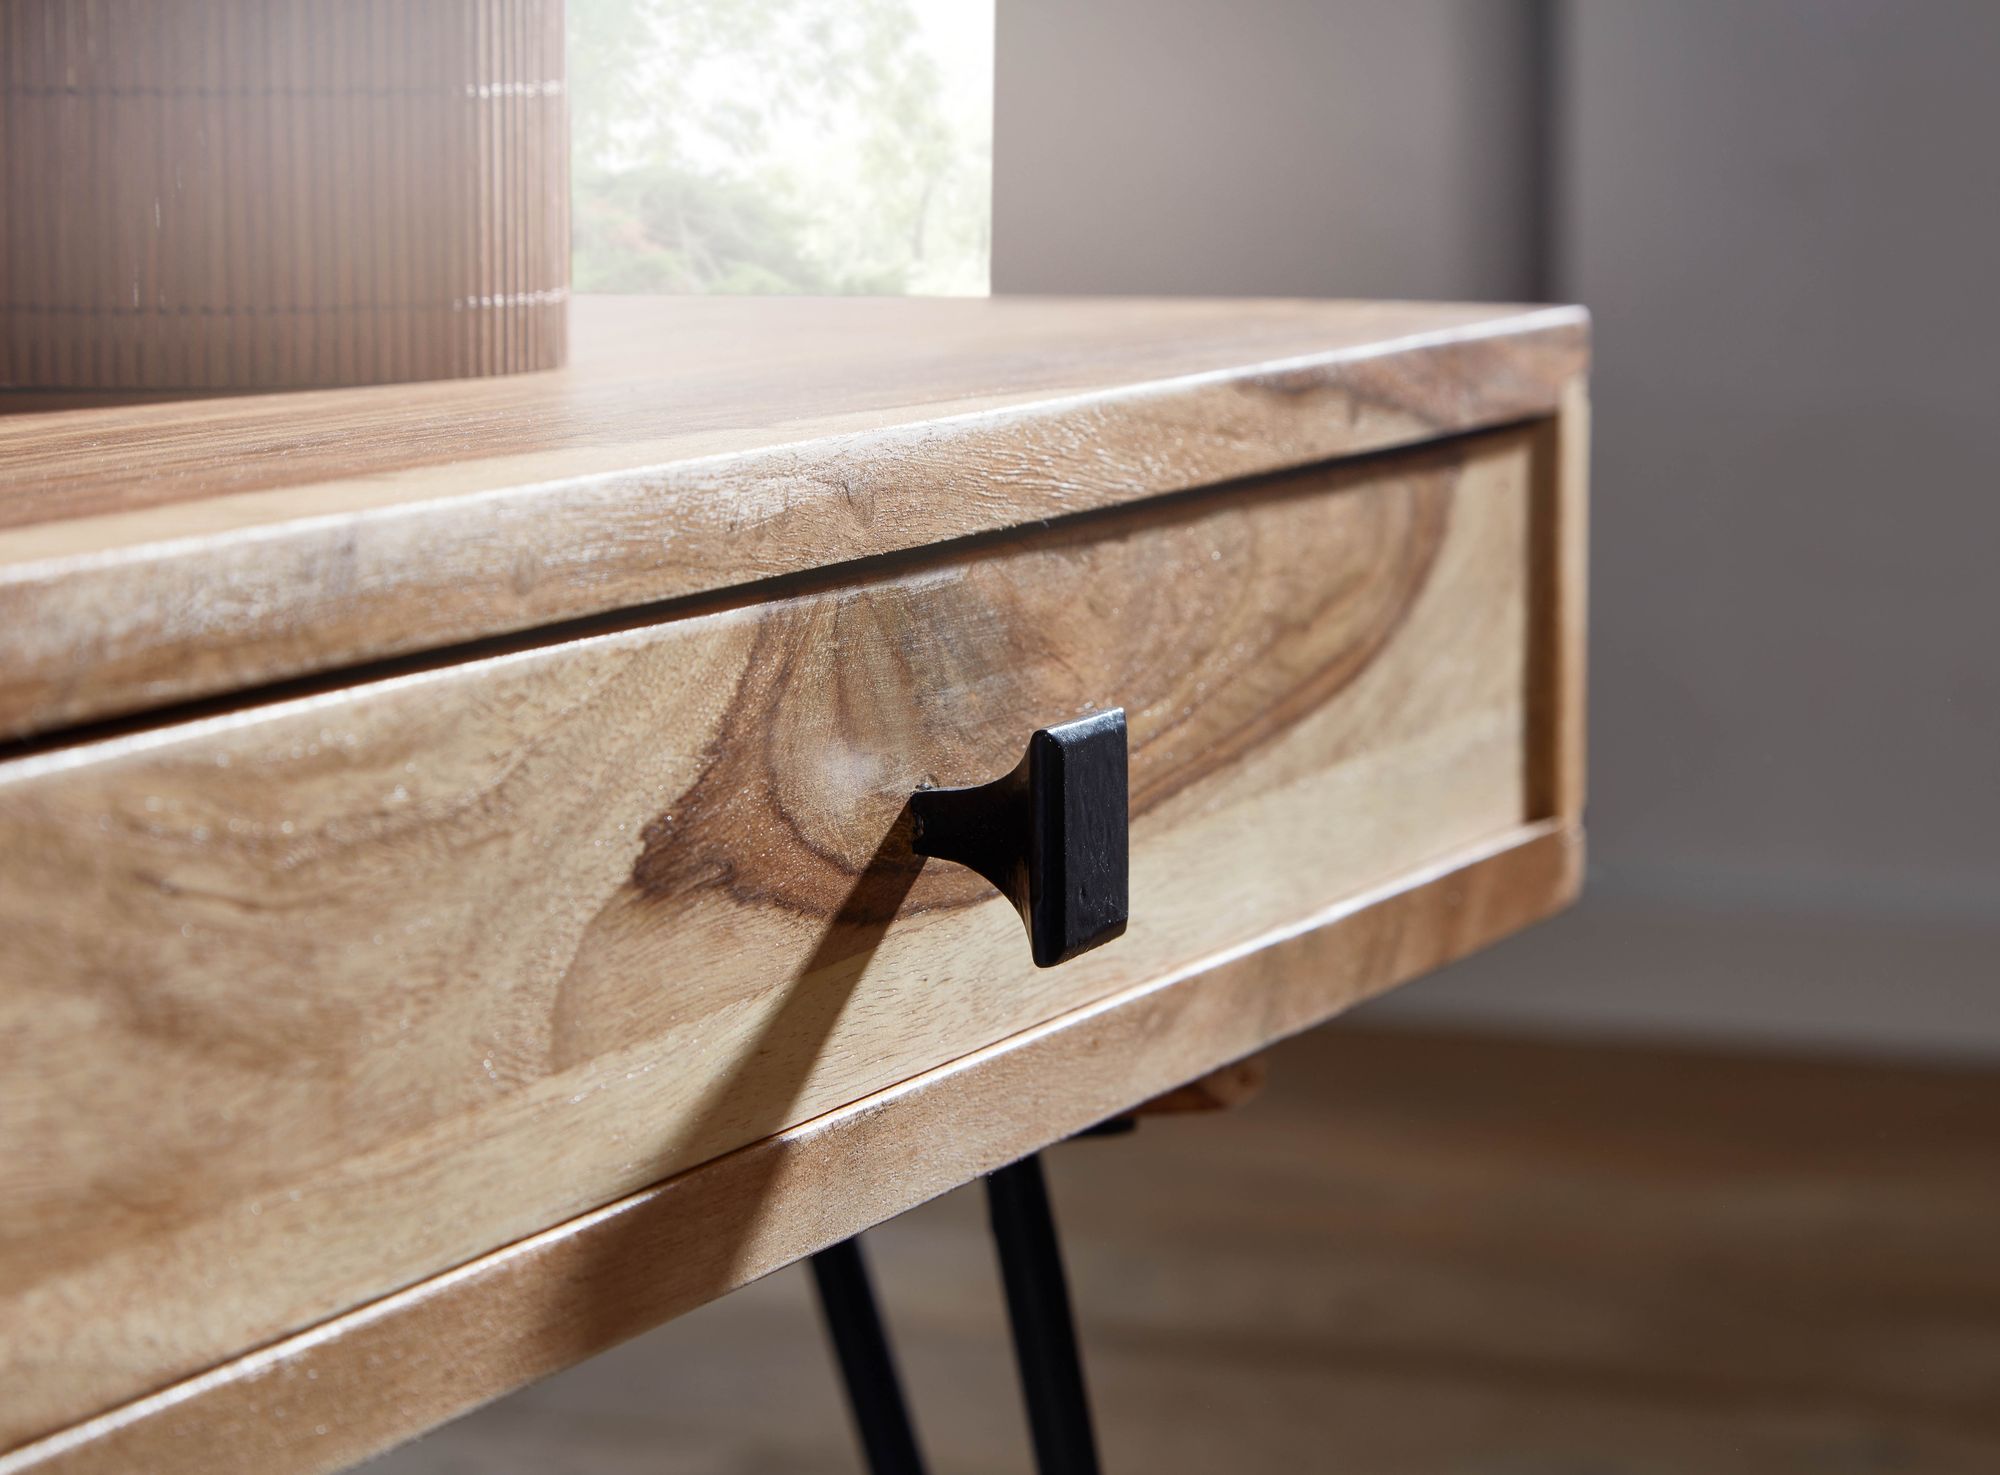 WOHNLING Couchtisch Massiv-Holz Akazie 110 cm breit Wohnzimmer-Tisch Design Metallbeine Landhaus-Stil Beistelltisch